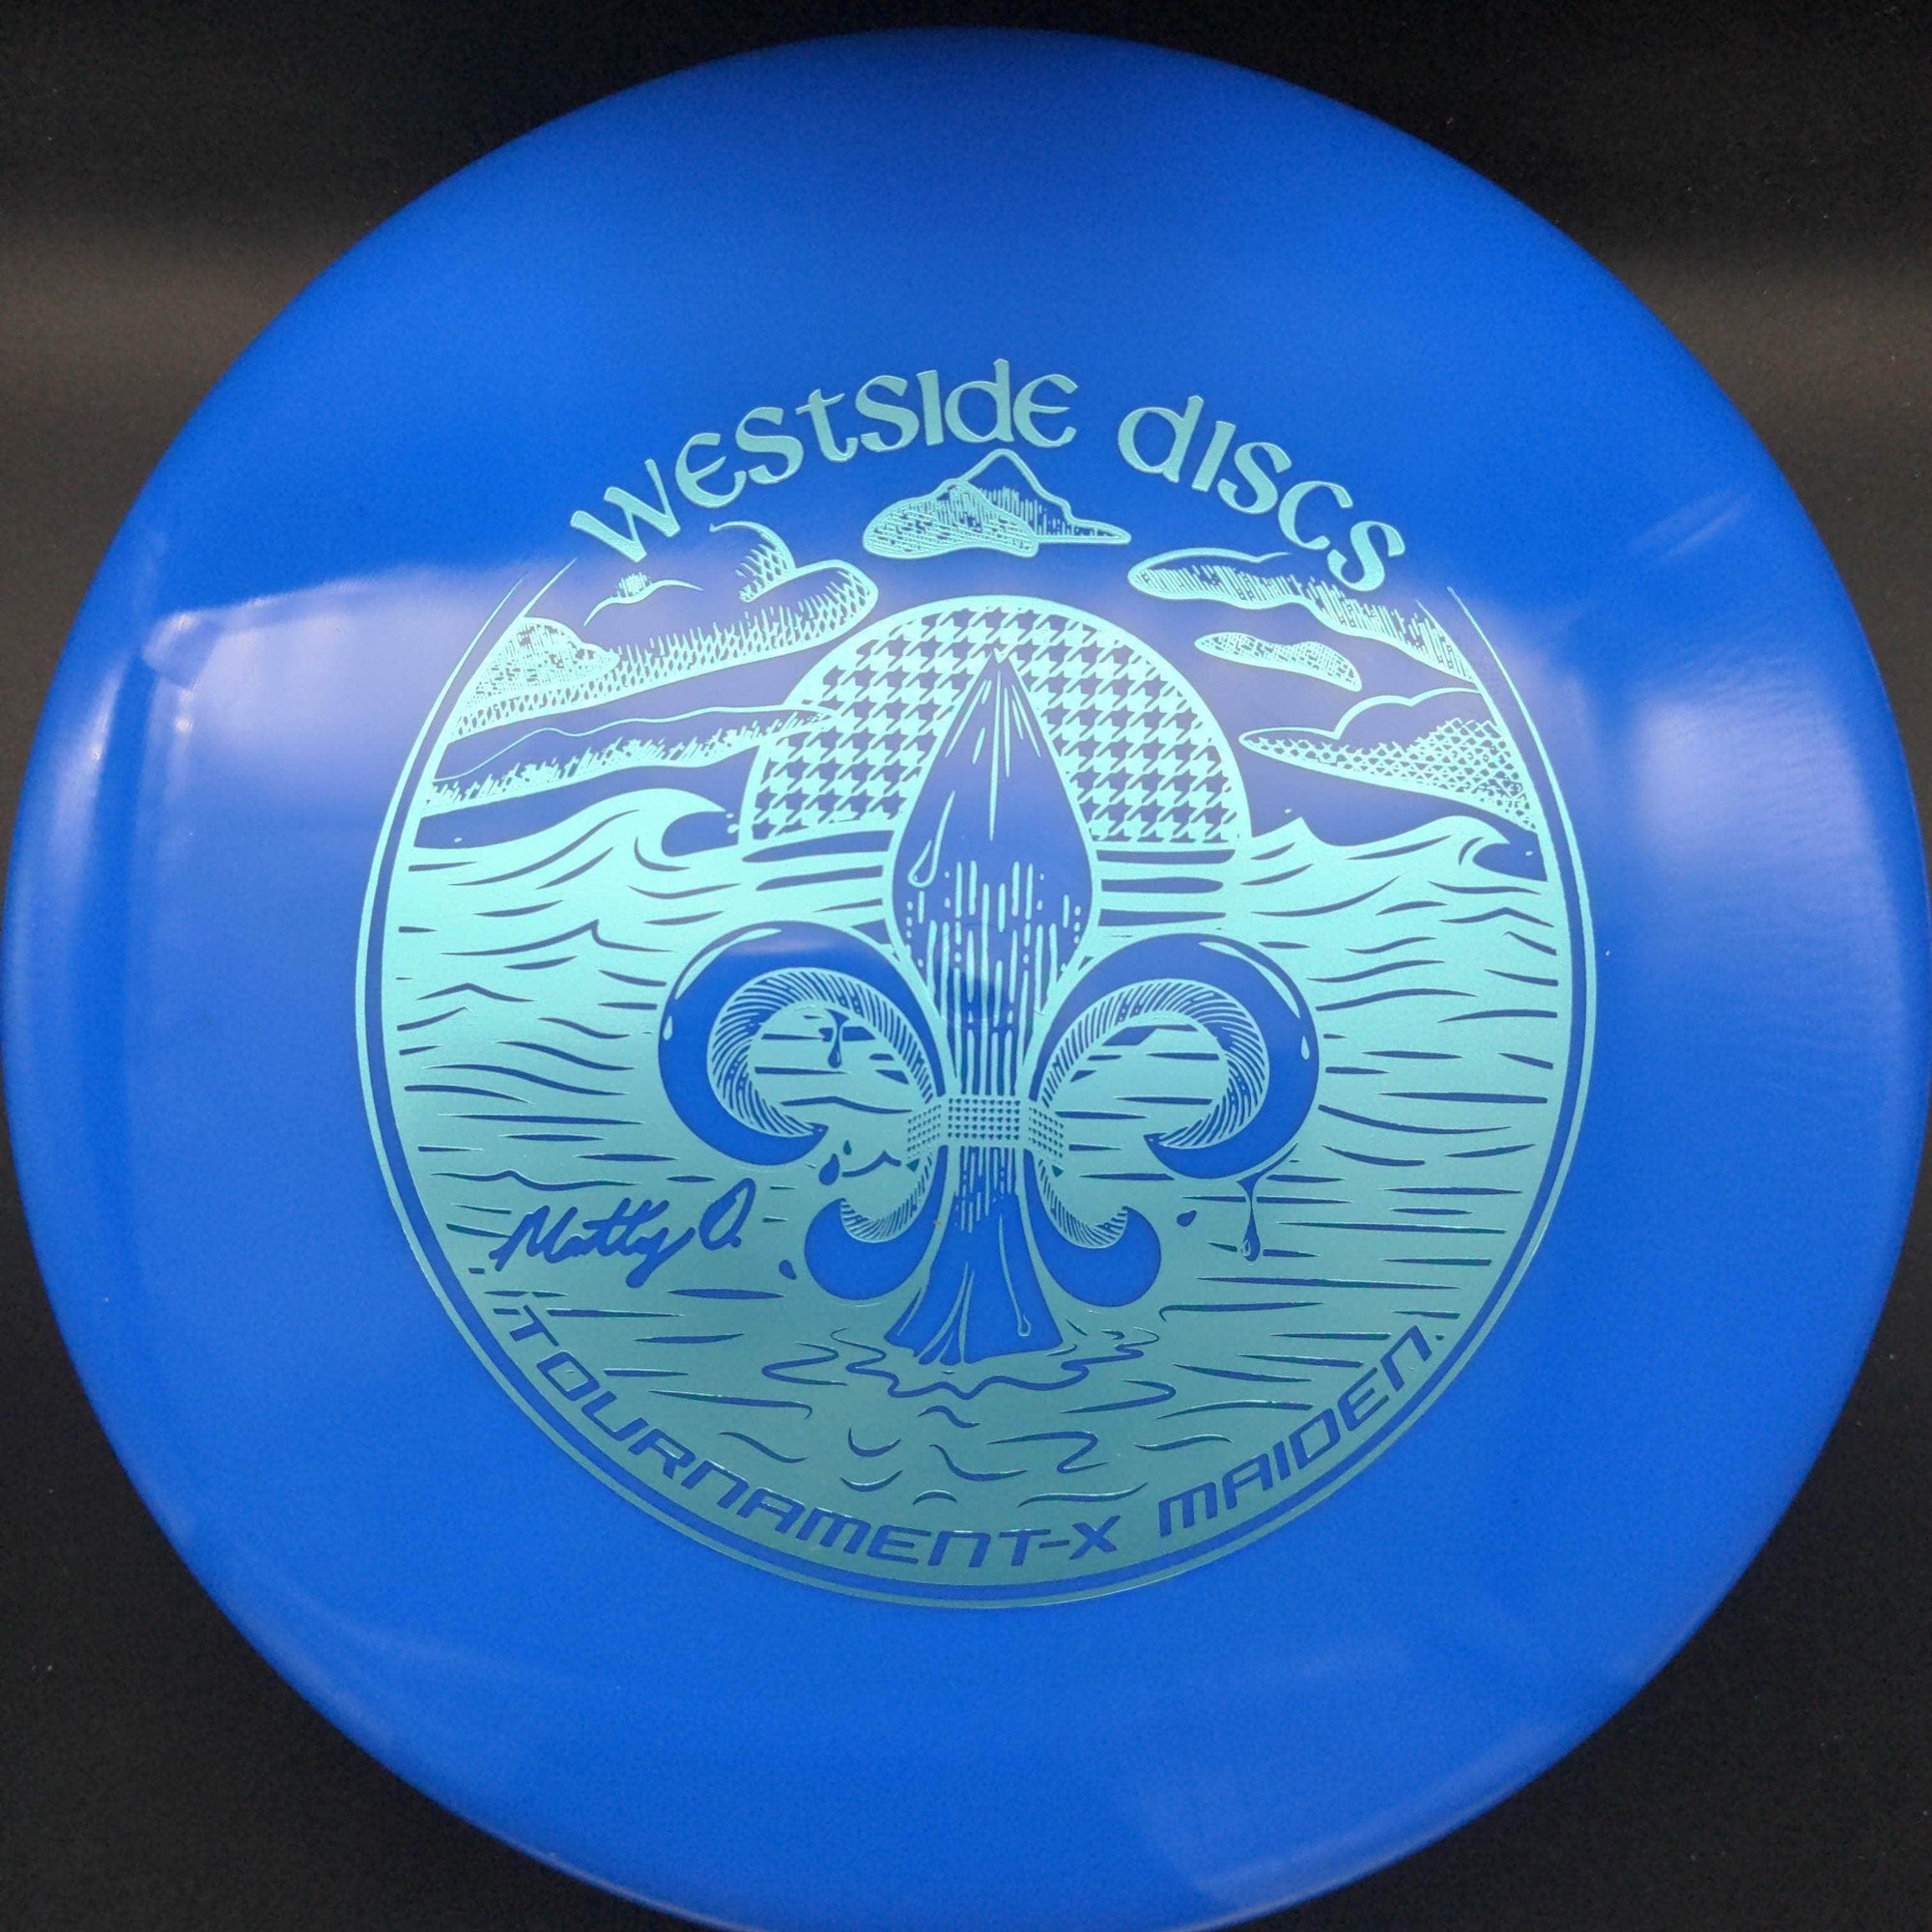 Westside Discs Putter Blue Light Green Stamp 174g Maiden, Tournament-X, Matt Orum Team Series